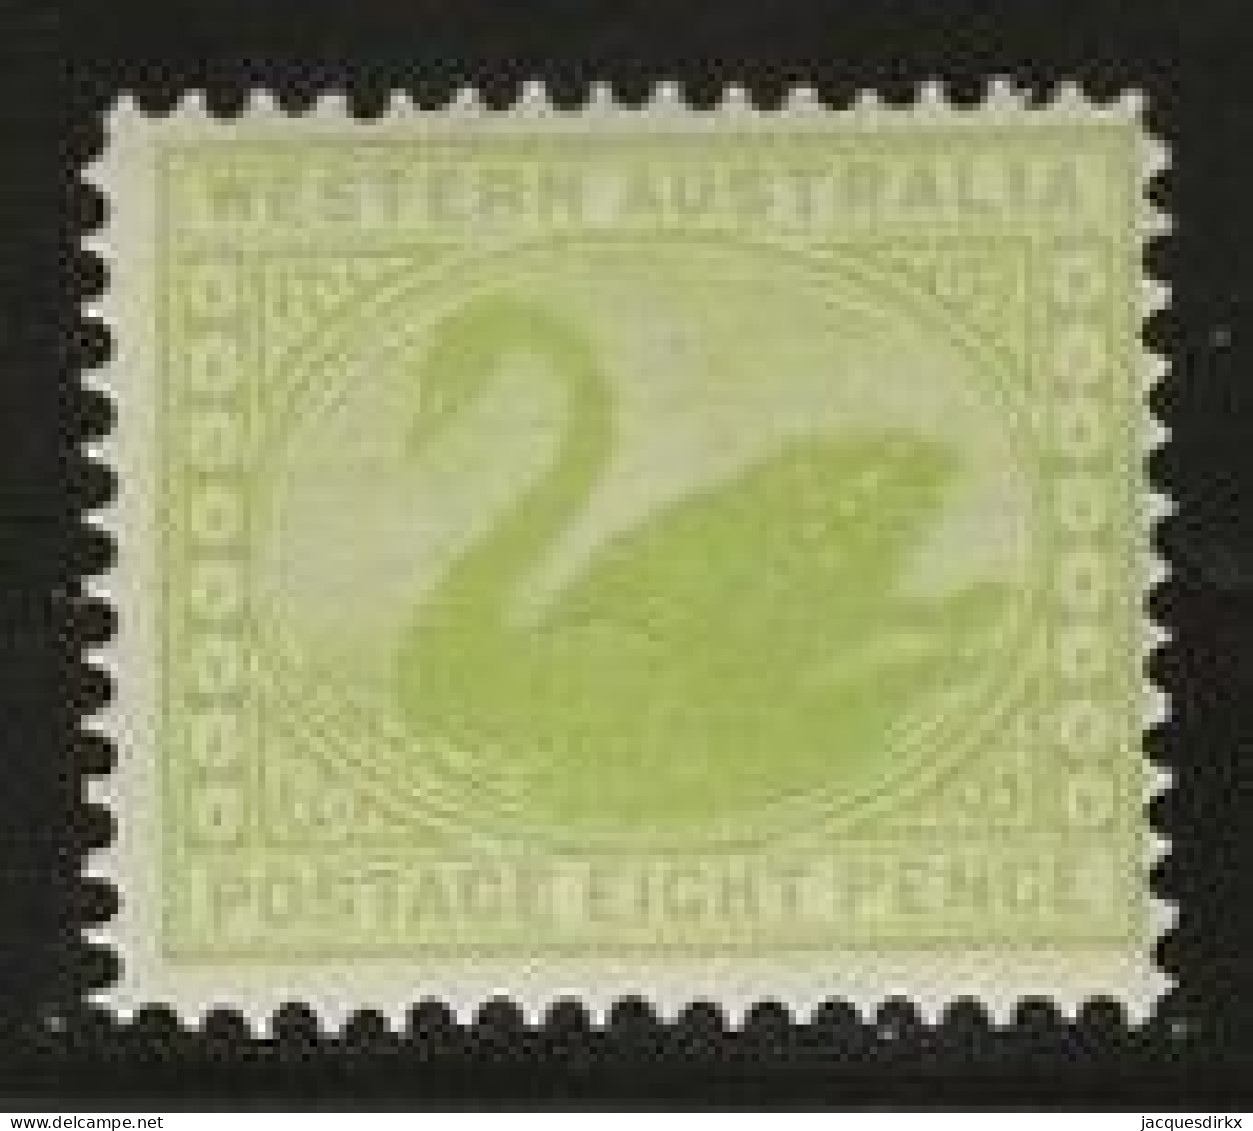 Western Australia     .   SG    .    121          .   *       .     Mint-hinged - Ungebraucht